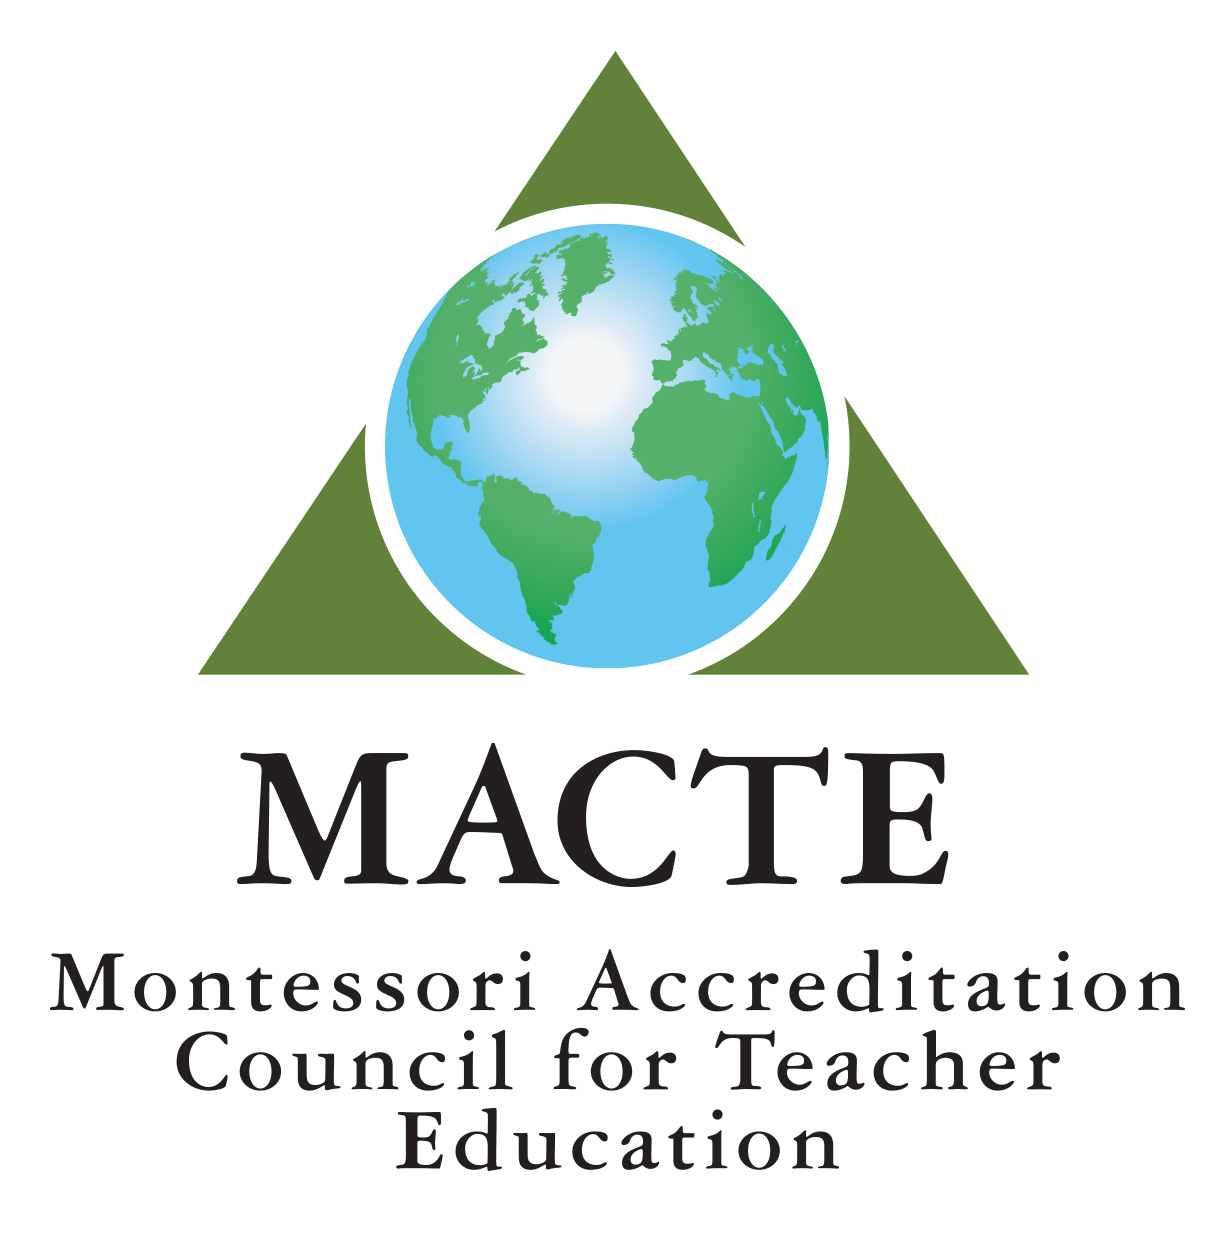 montessori education accreditation